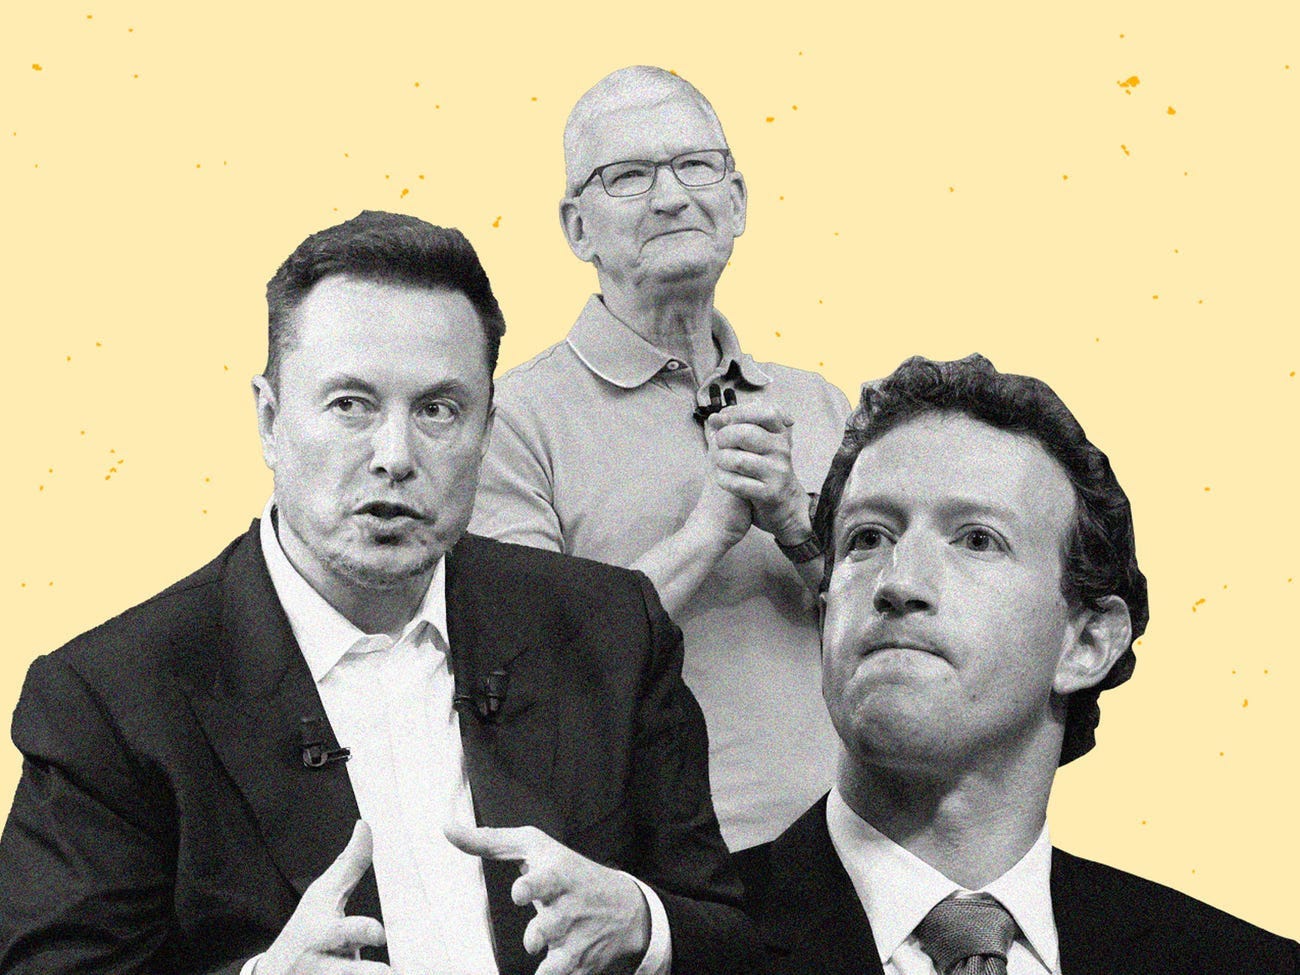 Mark Zuckerberg, Elon Musk und Tim Cook vor gelbem Hintergrund.